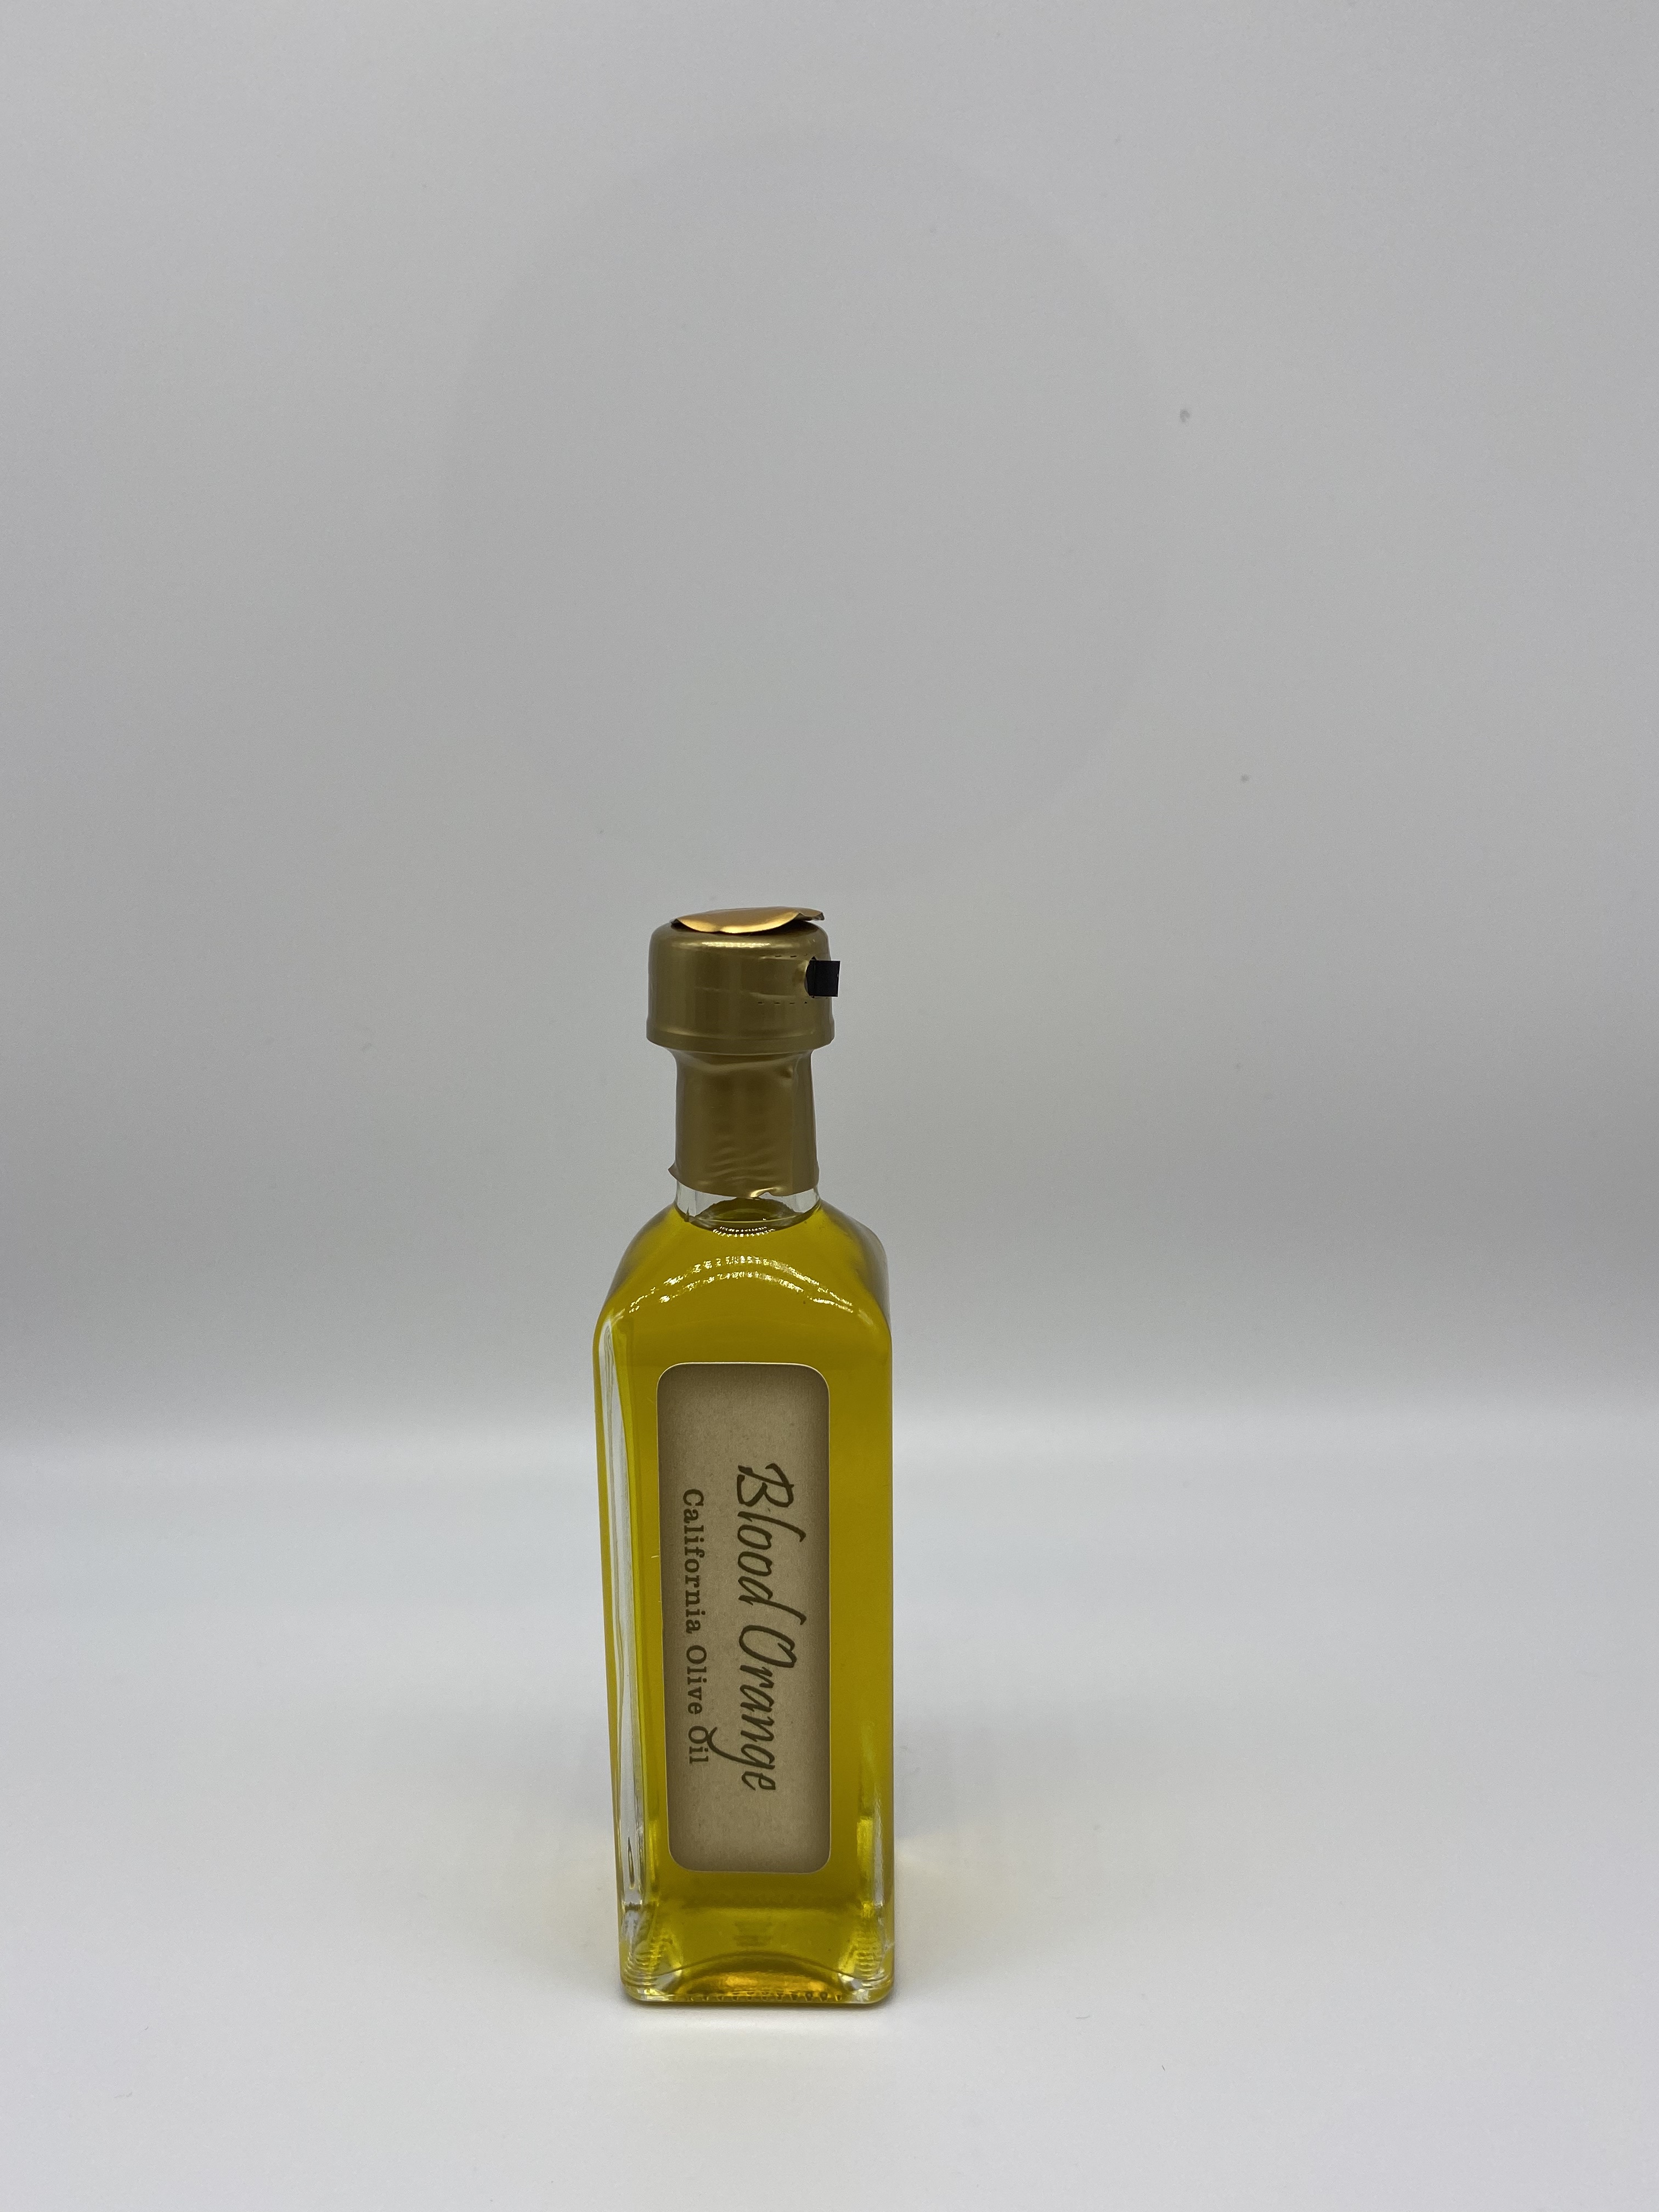 Product Image for Blood Orange Olive Oil